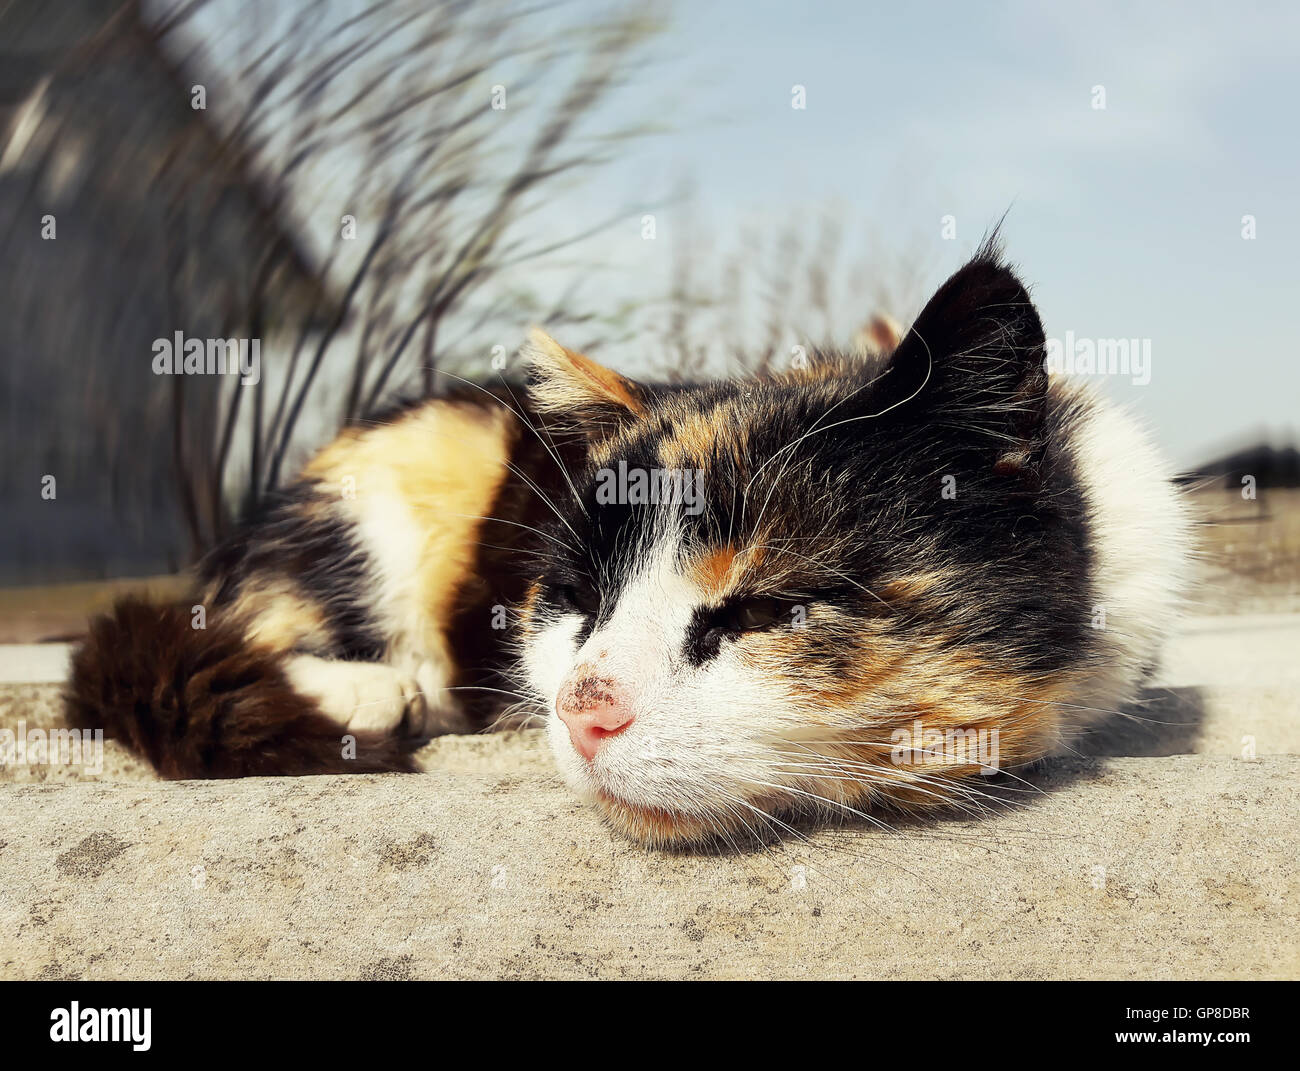 Sad kitten lying on a roof Stock Photo